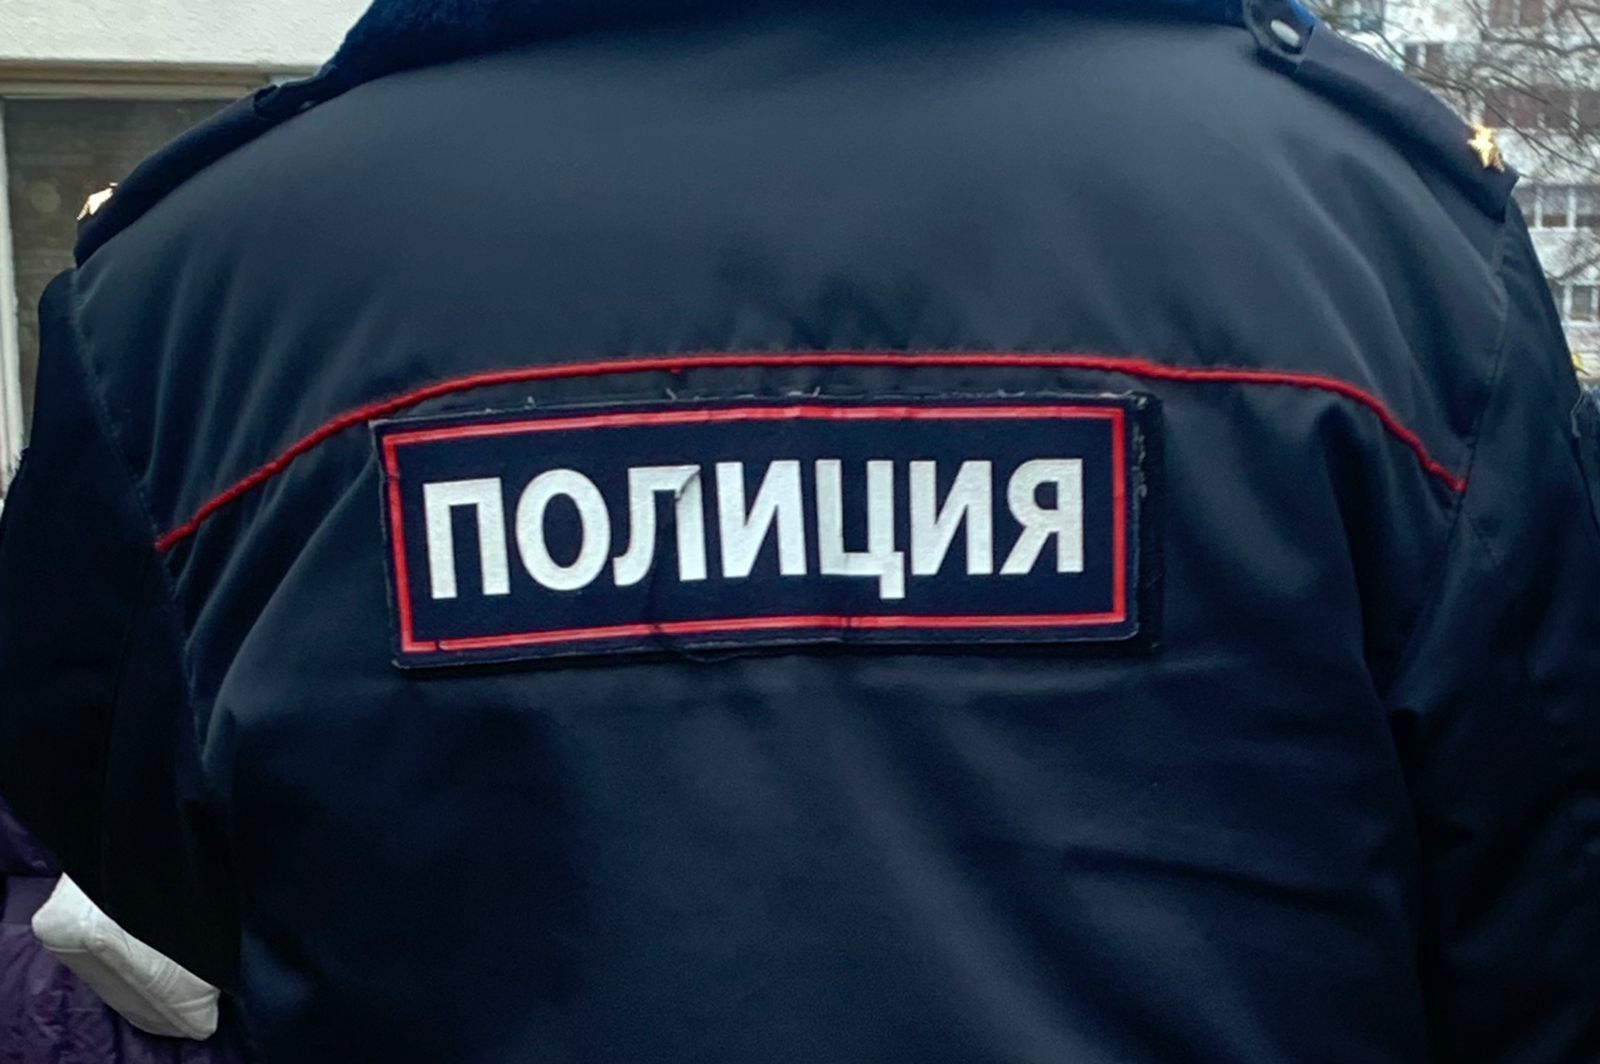 Житель Челнов отметил День Победы кражей водки и получил трое суток ареста